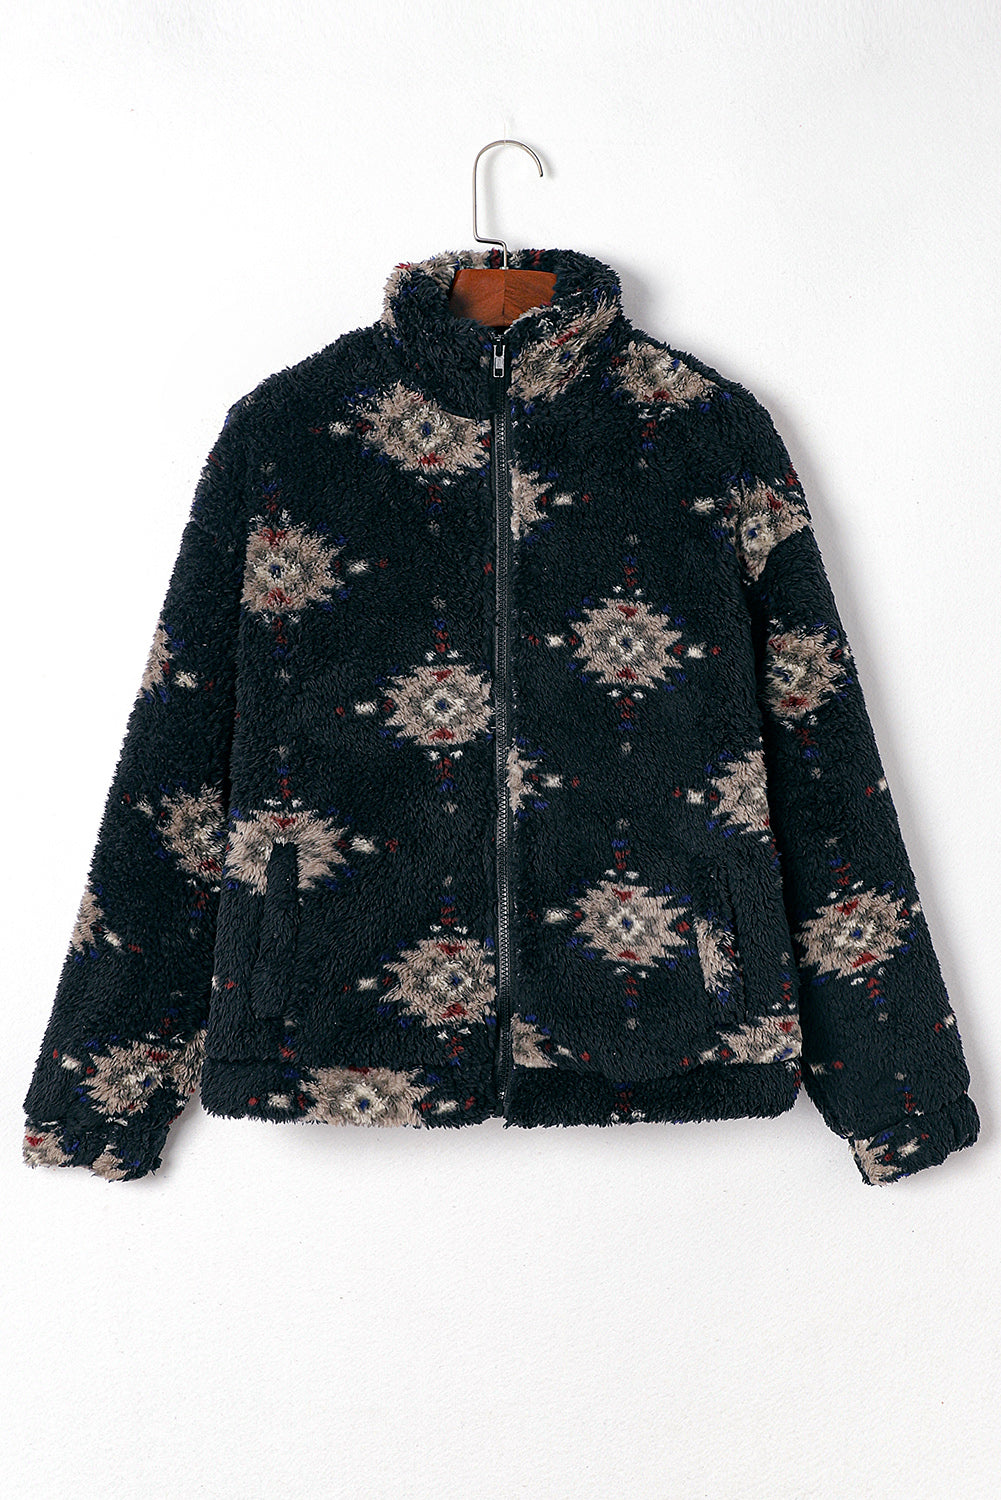 Črna šerpa jakna z azteškim vzorcem in ovratnikom z zadrgo